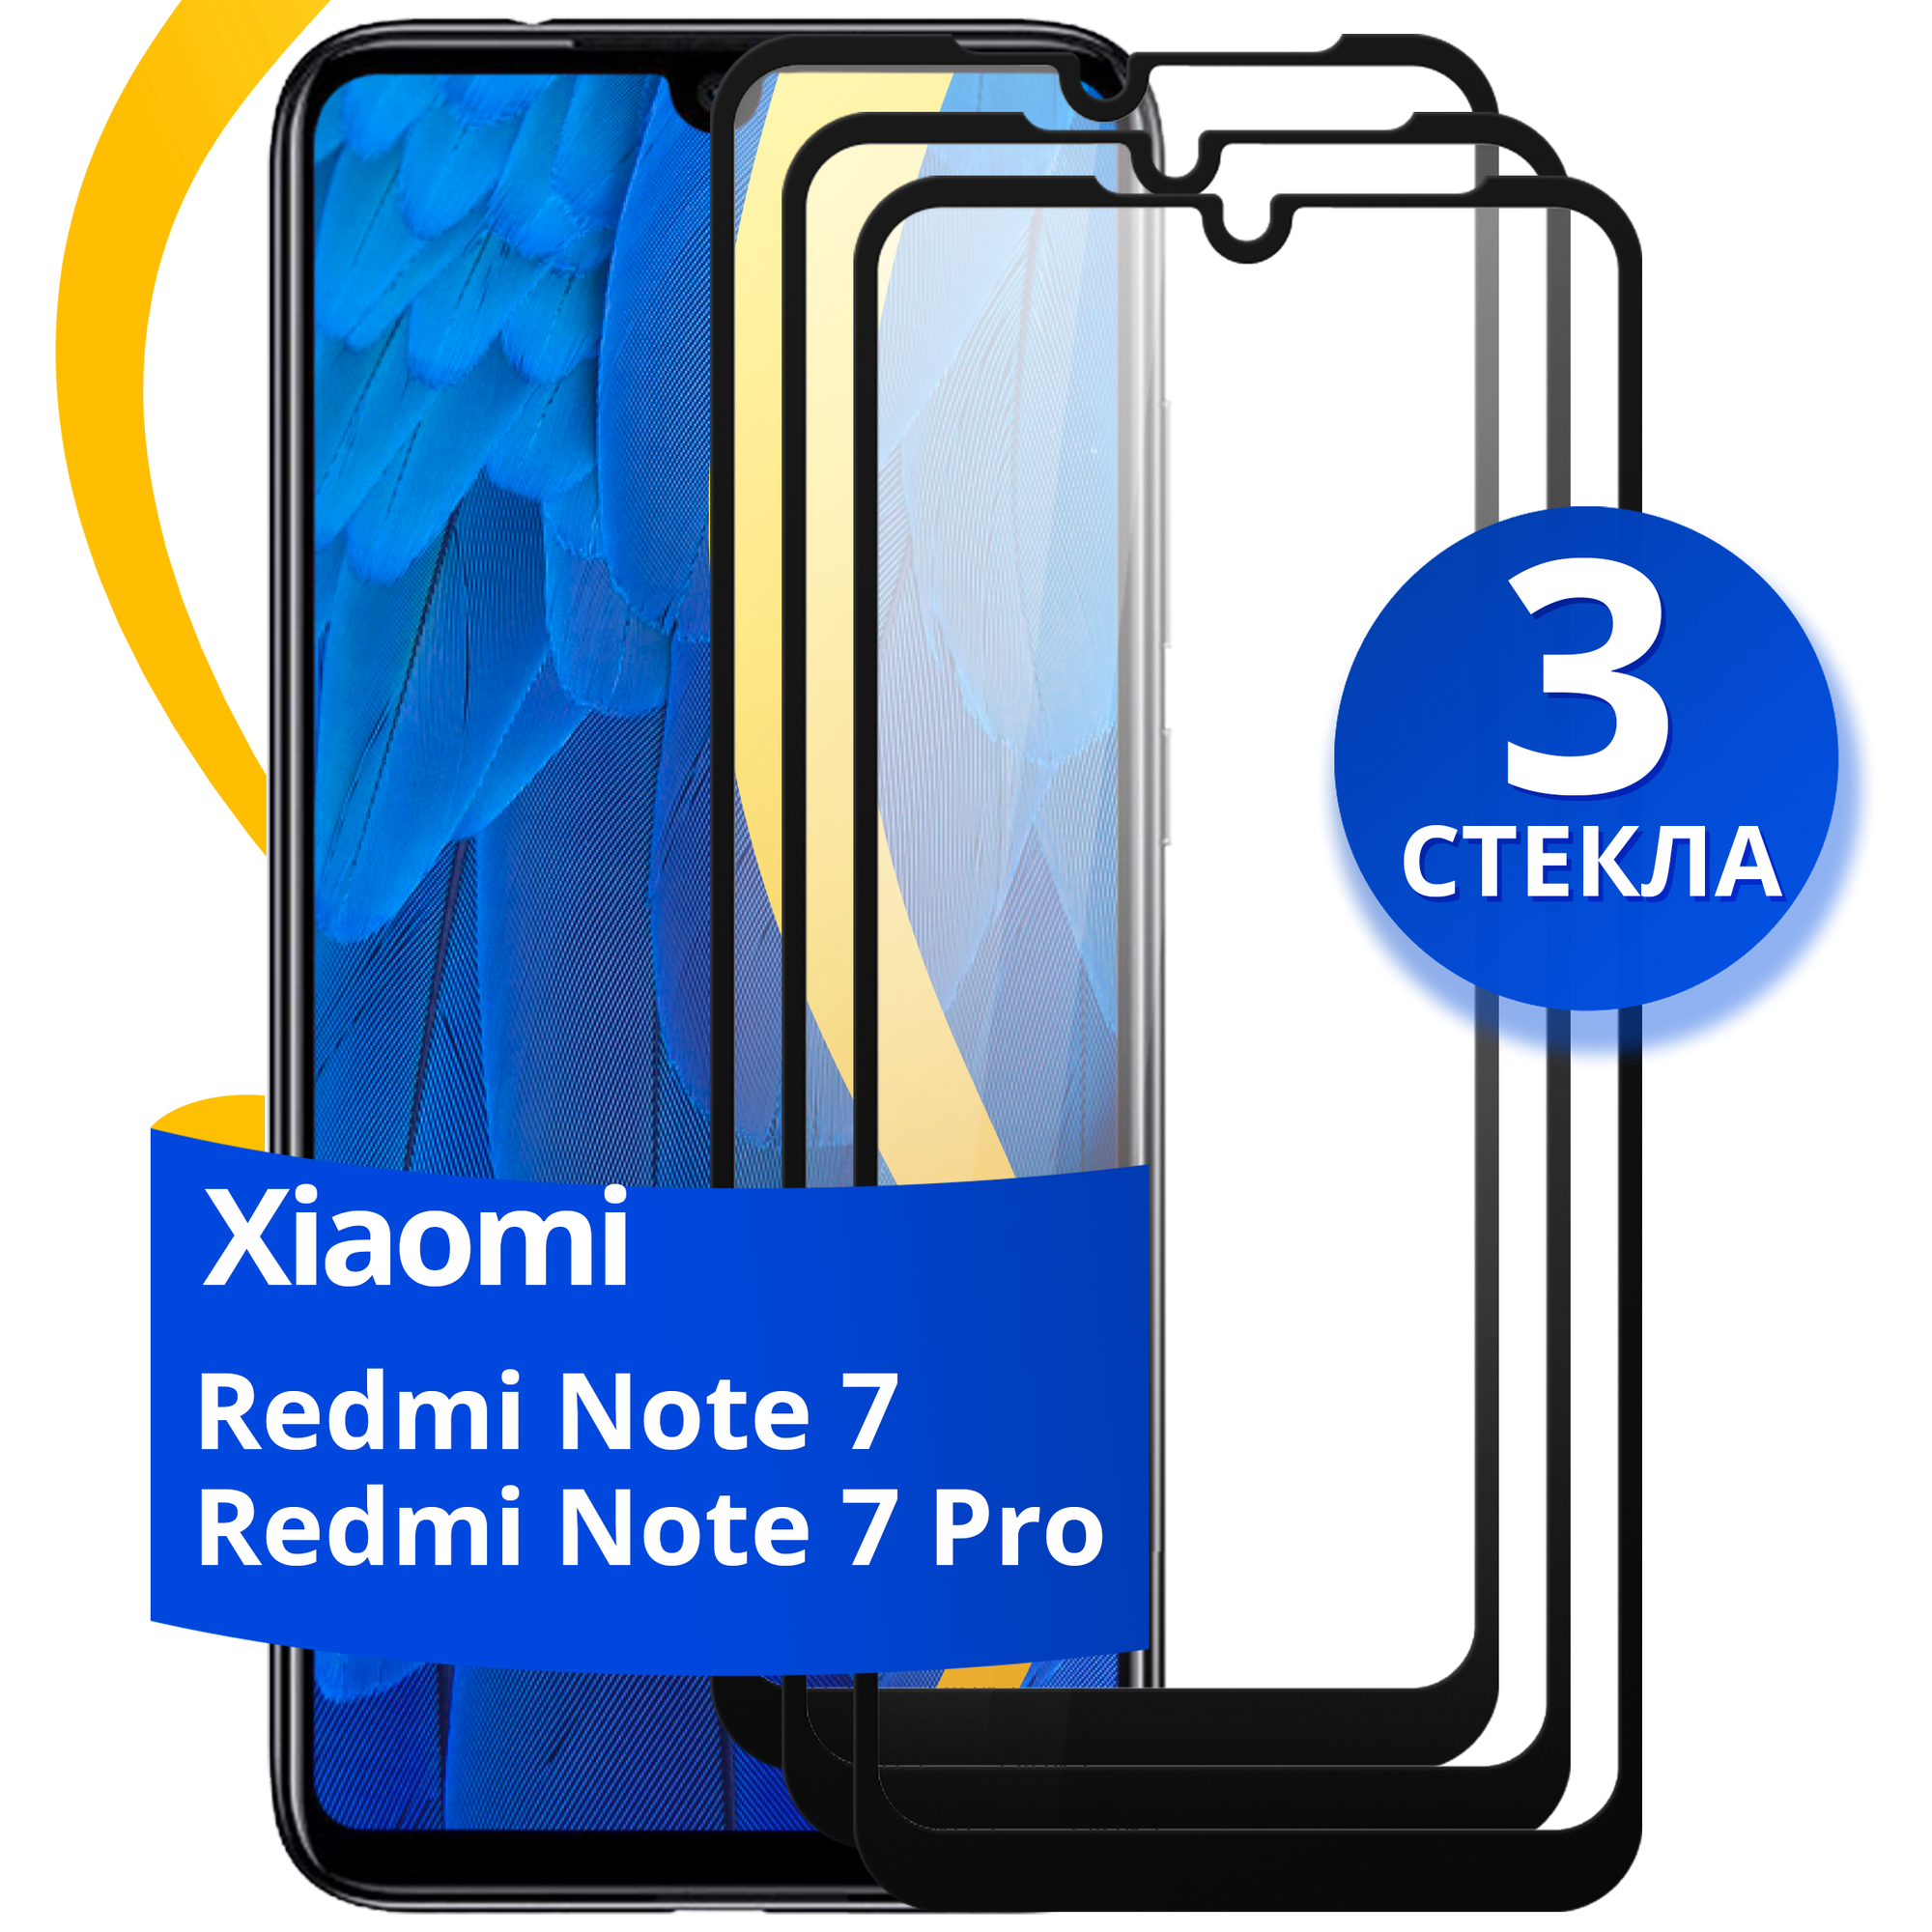 Комплект 2 шт защитное стекло для телефона Xiaomi Redmi Note 7 и Redmi Note 7 Pro / Набор стекол на смартфон Сяоми Редми Нот 7 и Редми Нот 7 Про